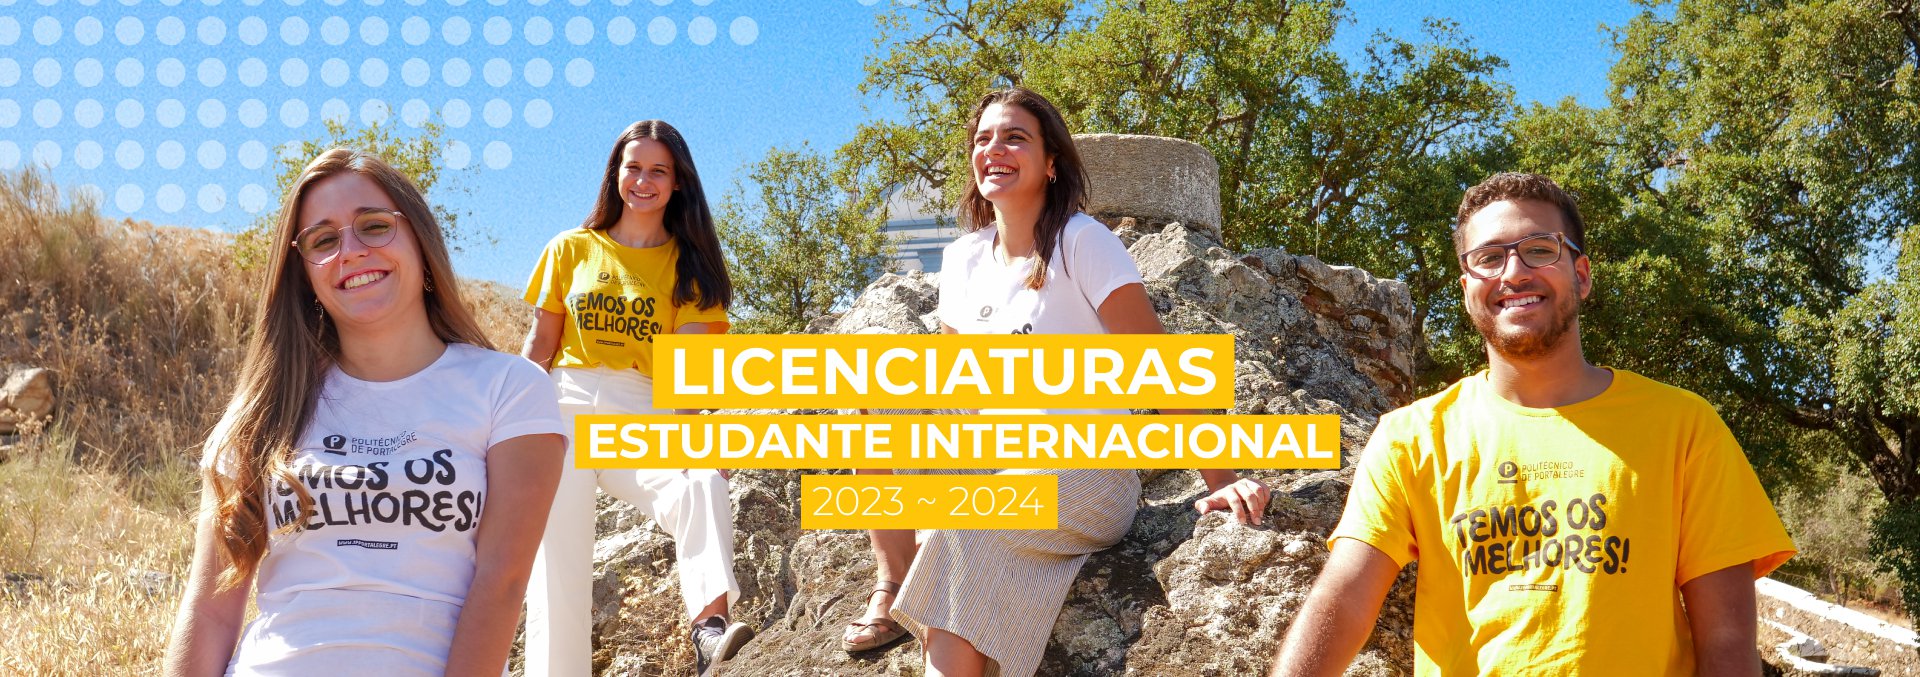 Concurso Especial para Estudantes Internacionais, Licenciaturas | Ano letivo 2023/2024, Candidaturas até 31 de março